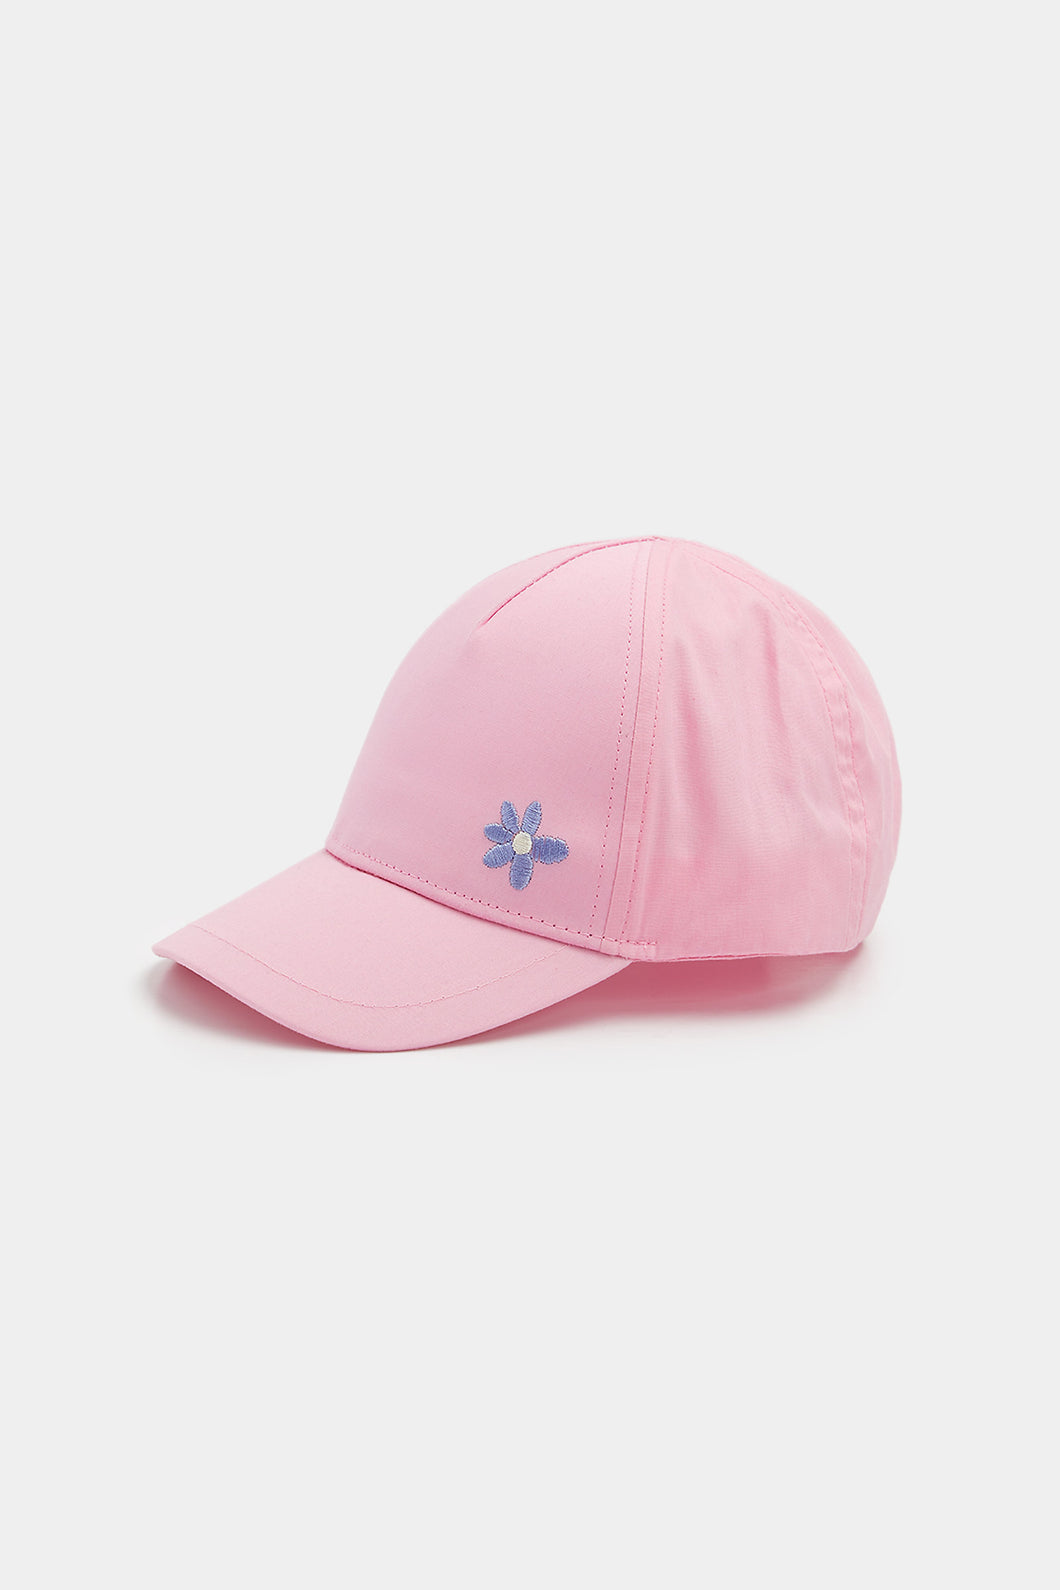 Mothercare Pink Cap